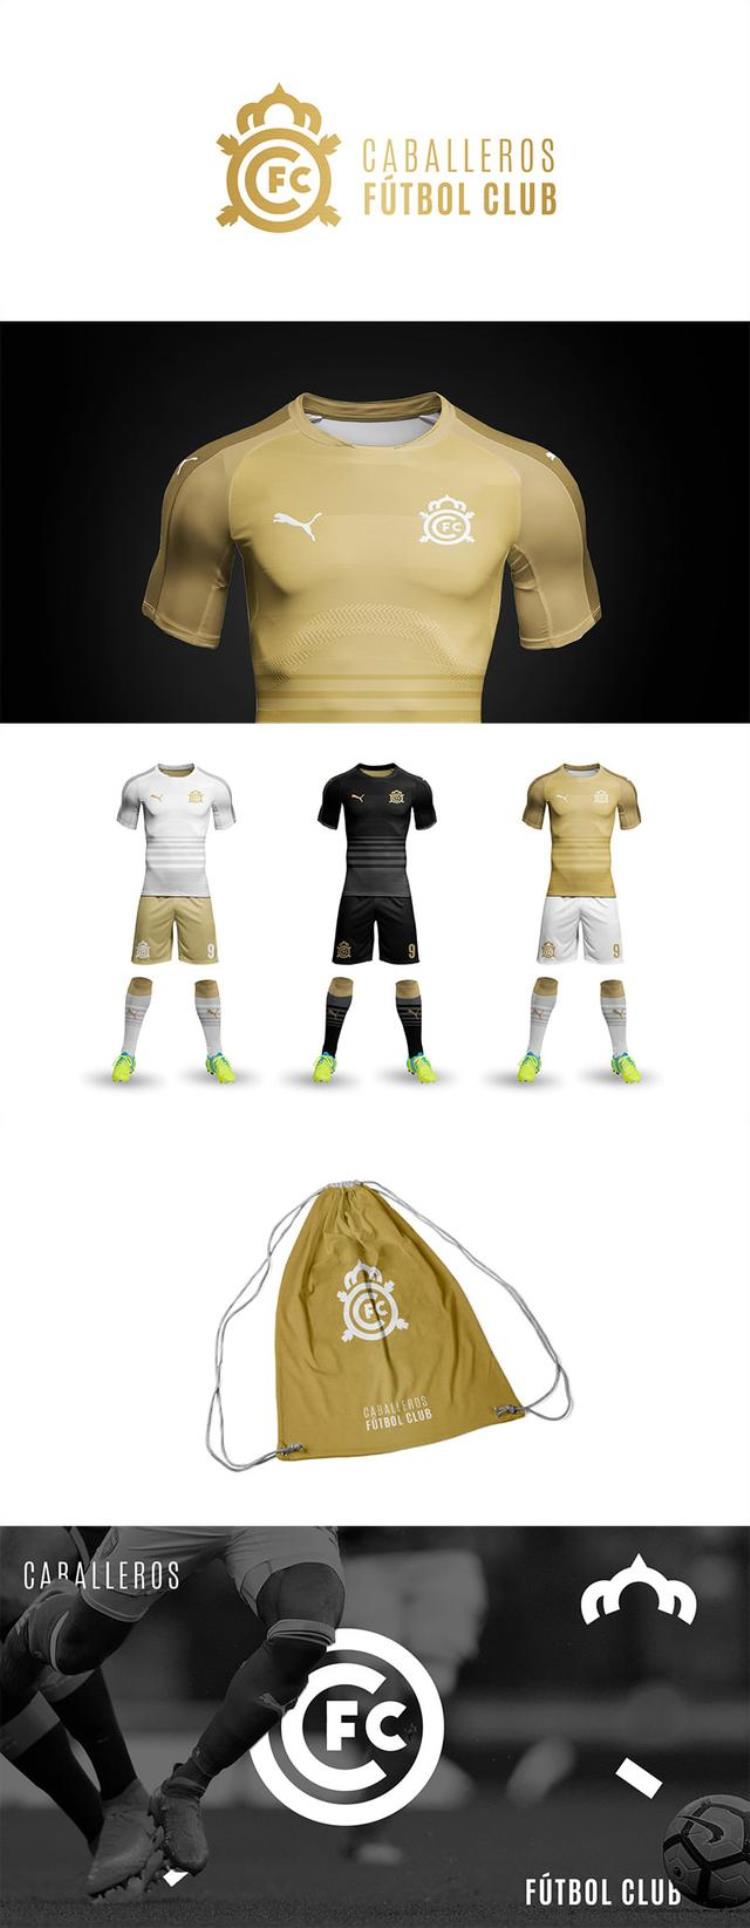 足球队服装什么颜色比较好「52款知名足球俱乐部的品牌及服装配色你喜欢哪家」